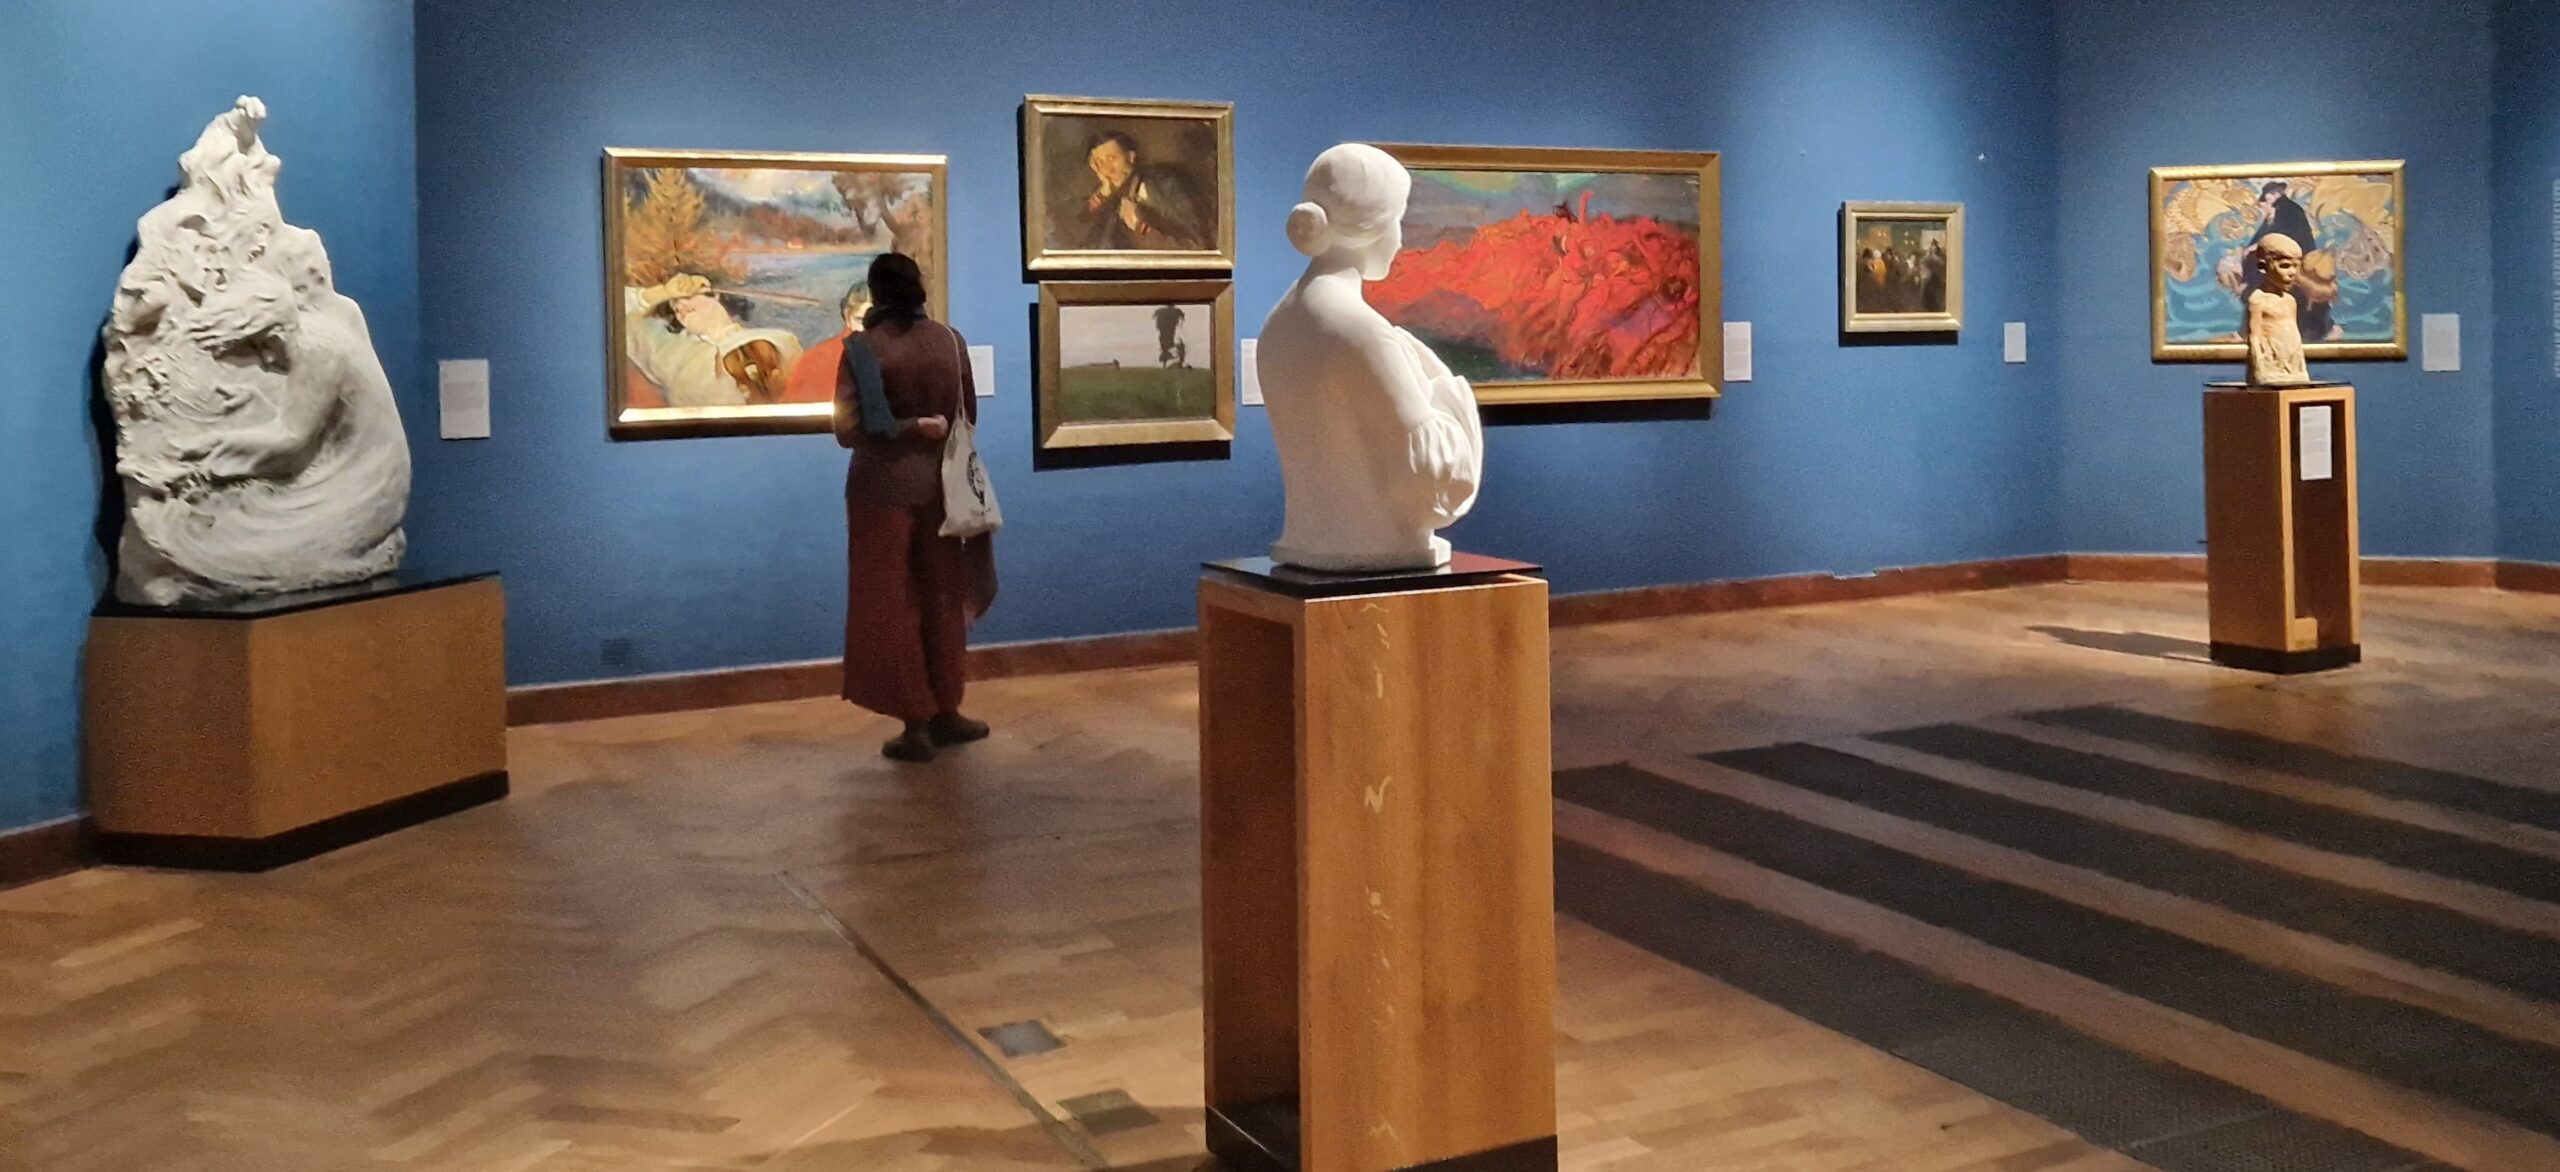 Musée National : découverte de la peinture polonaise